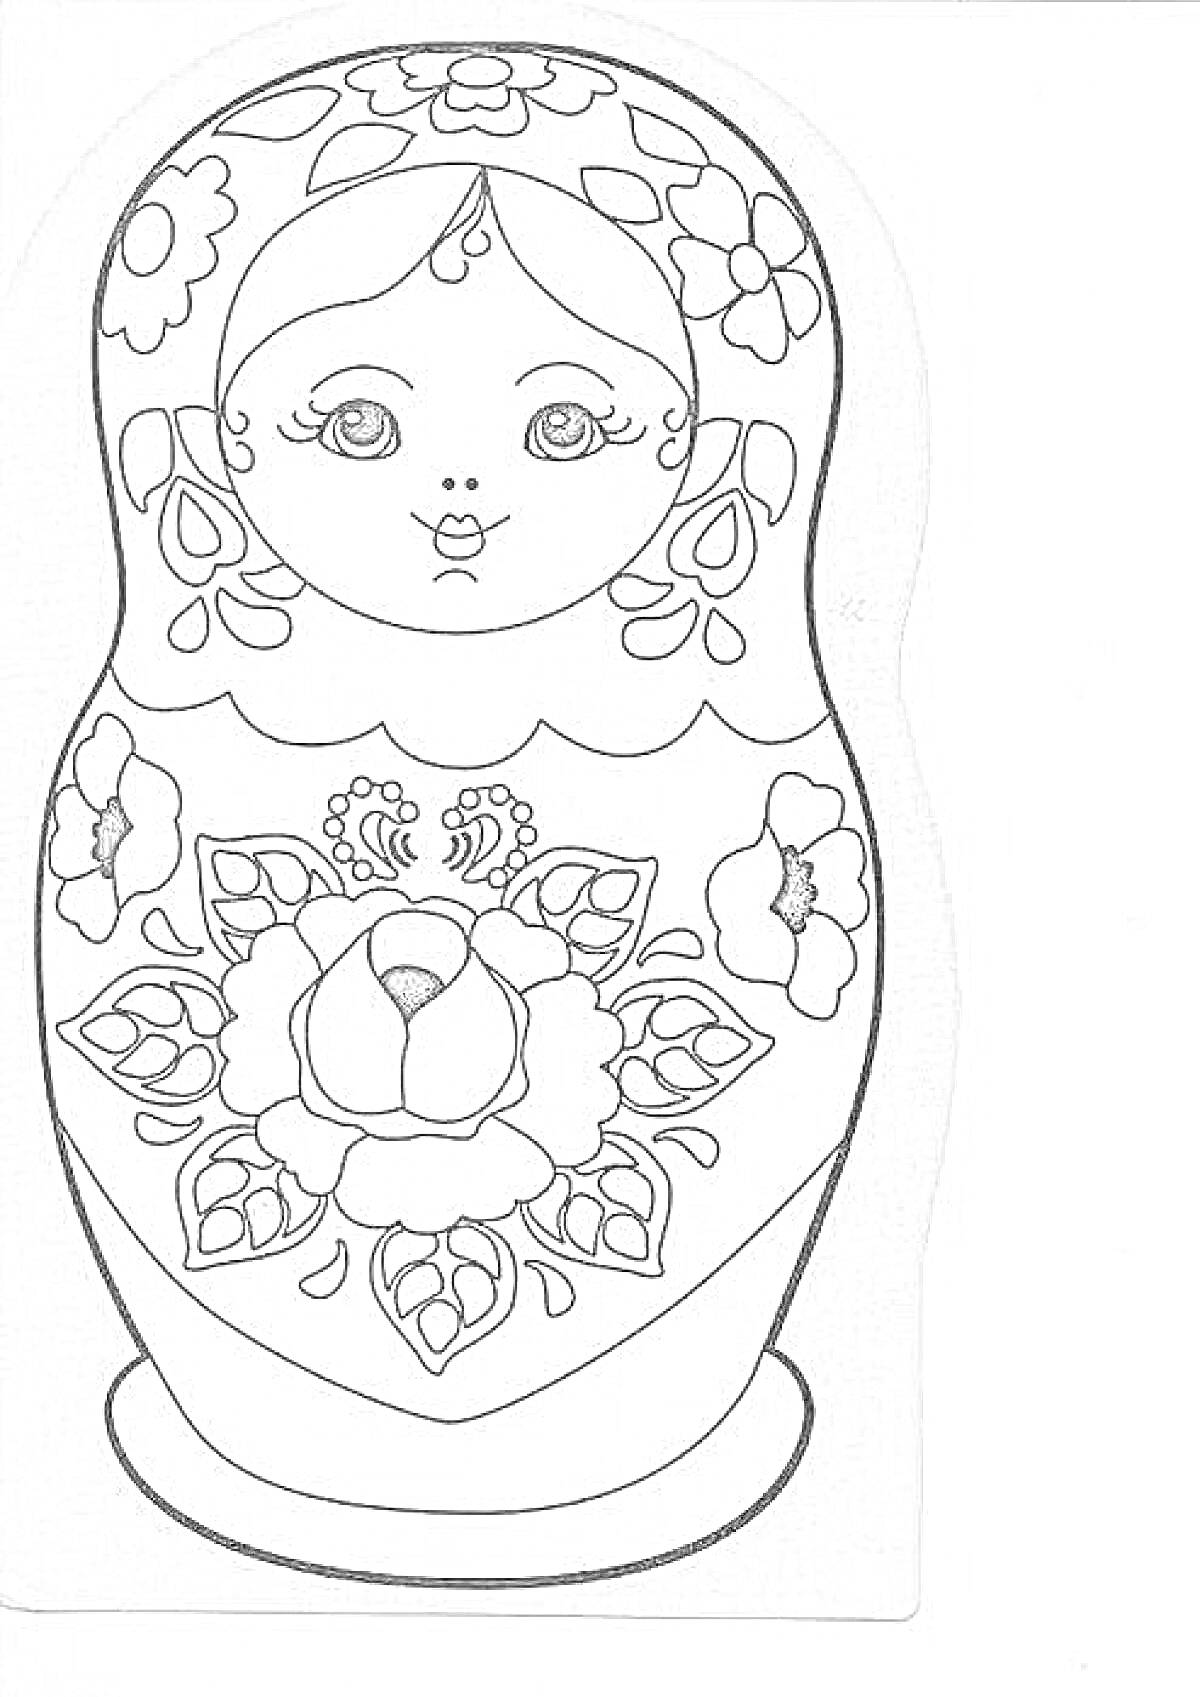 Раскраска матрешка с городецкой росписью, цветочный орнамент на груди, цветочный узор на голове